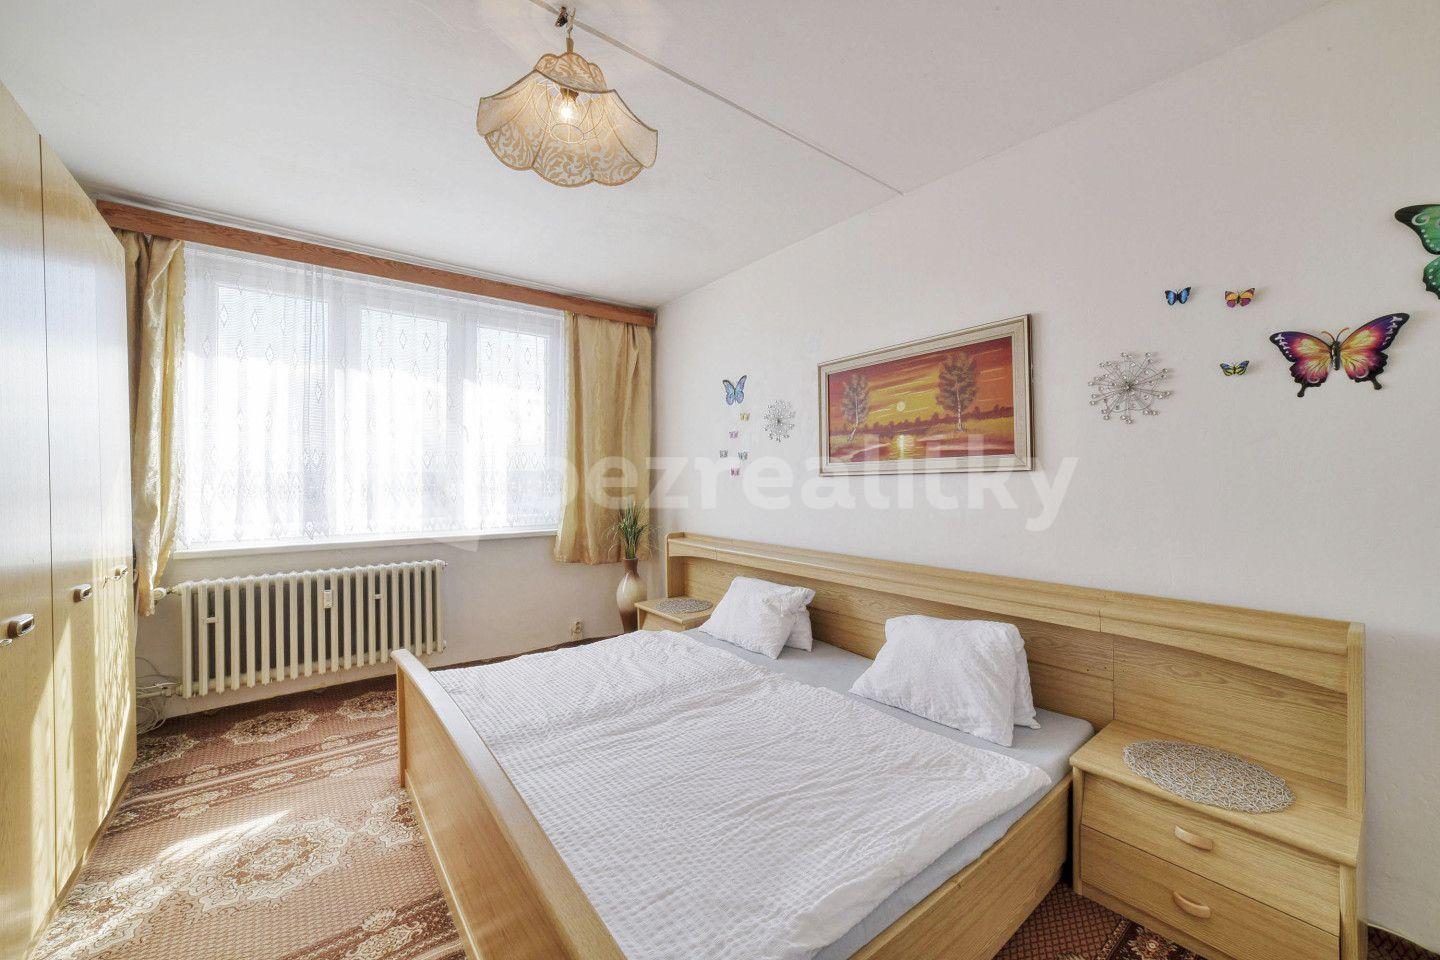 2 bedroom flat for sale, 51 m², U Hřiště, Teplá, Karlovarský Region